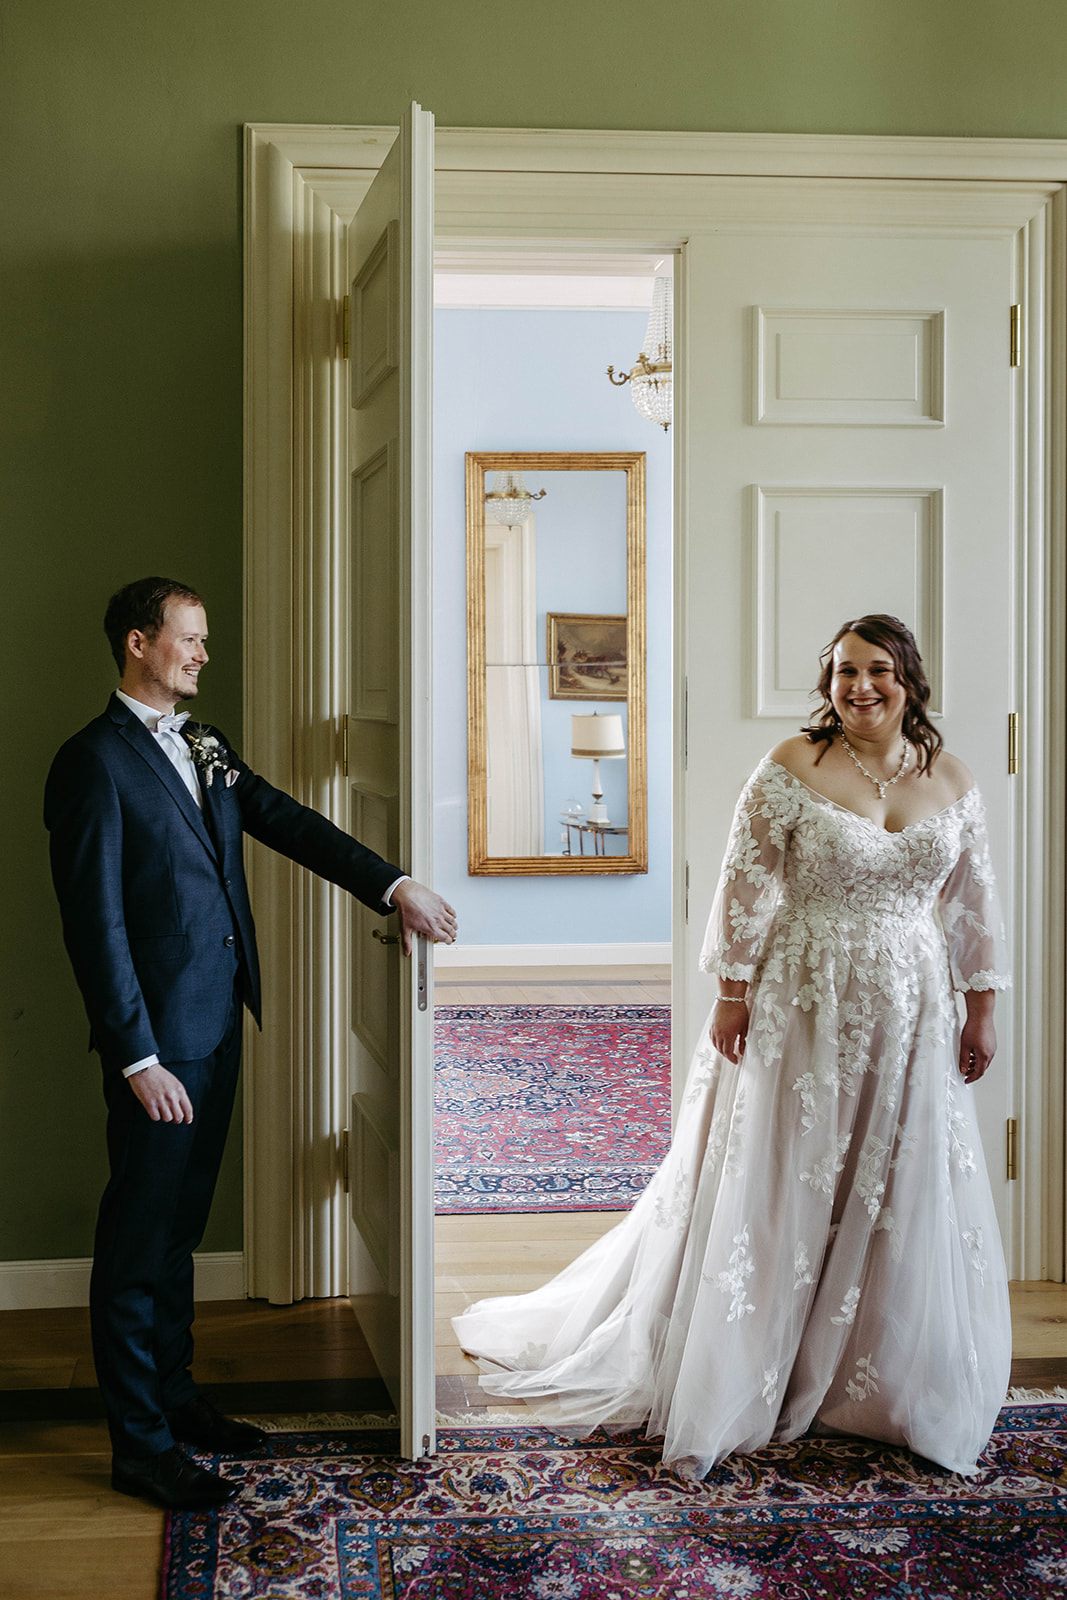 Herzerwärmender Augenblick: Die Braut steht hinter der geöffneten Tür, während der Bräutigam sie zum 1. Mal sehen wird.